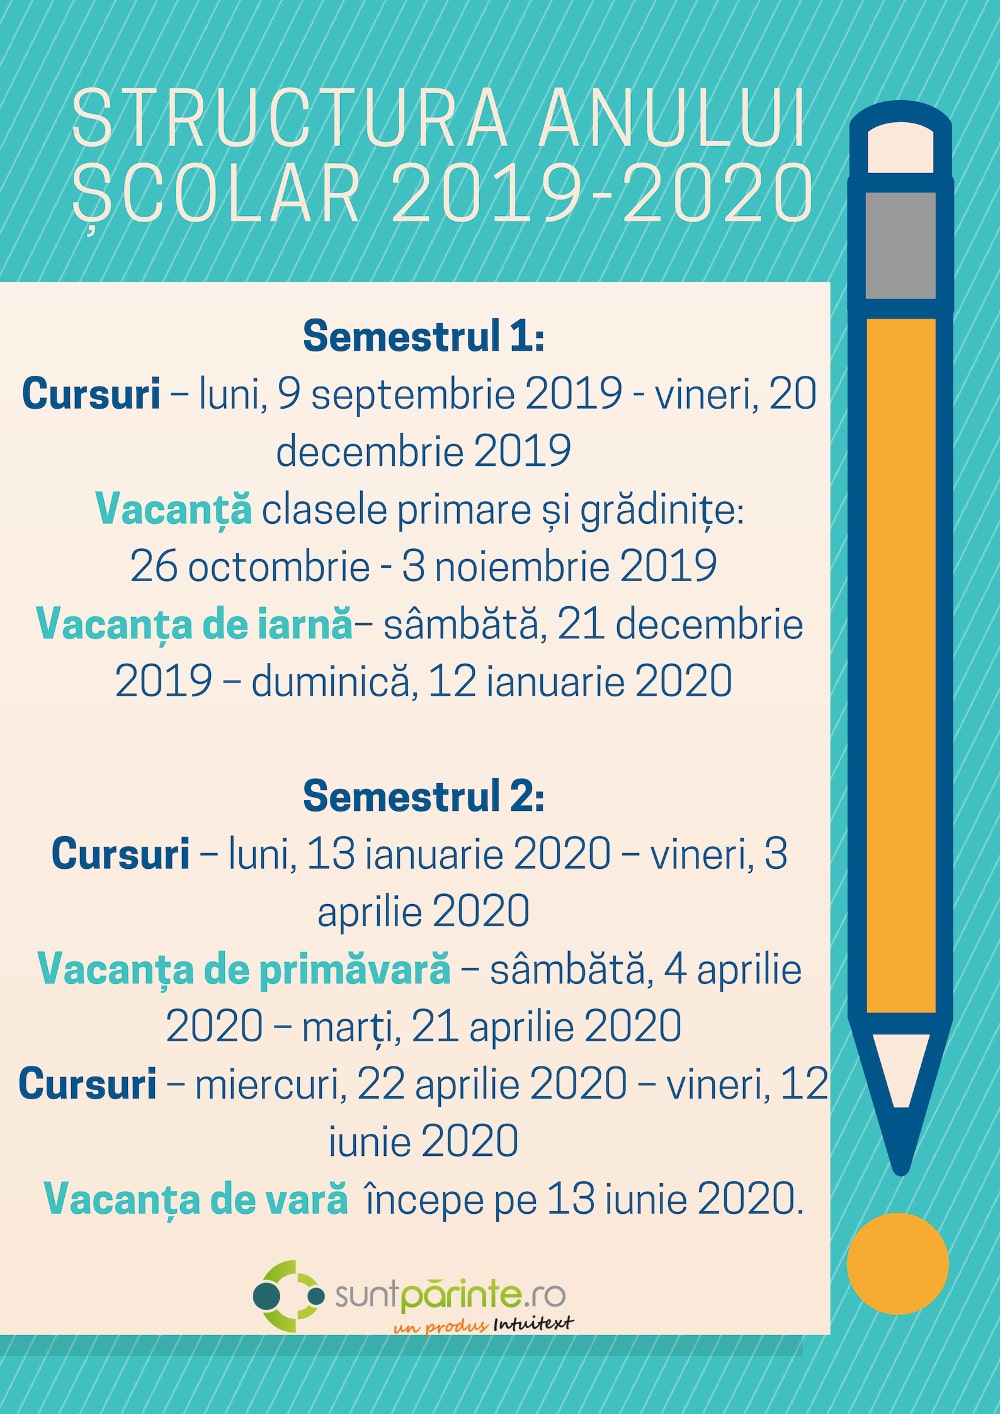 structura anului scolar 20199-2020